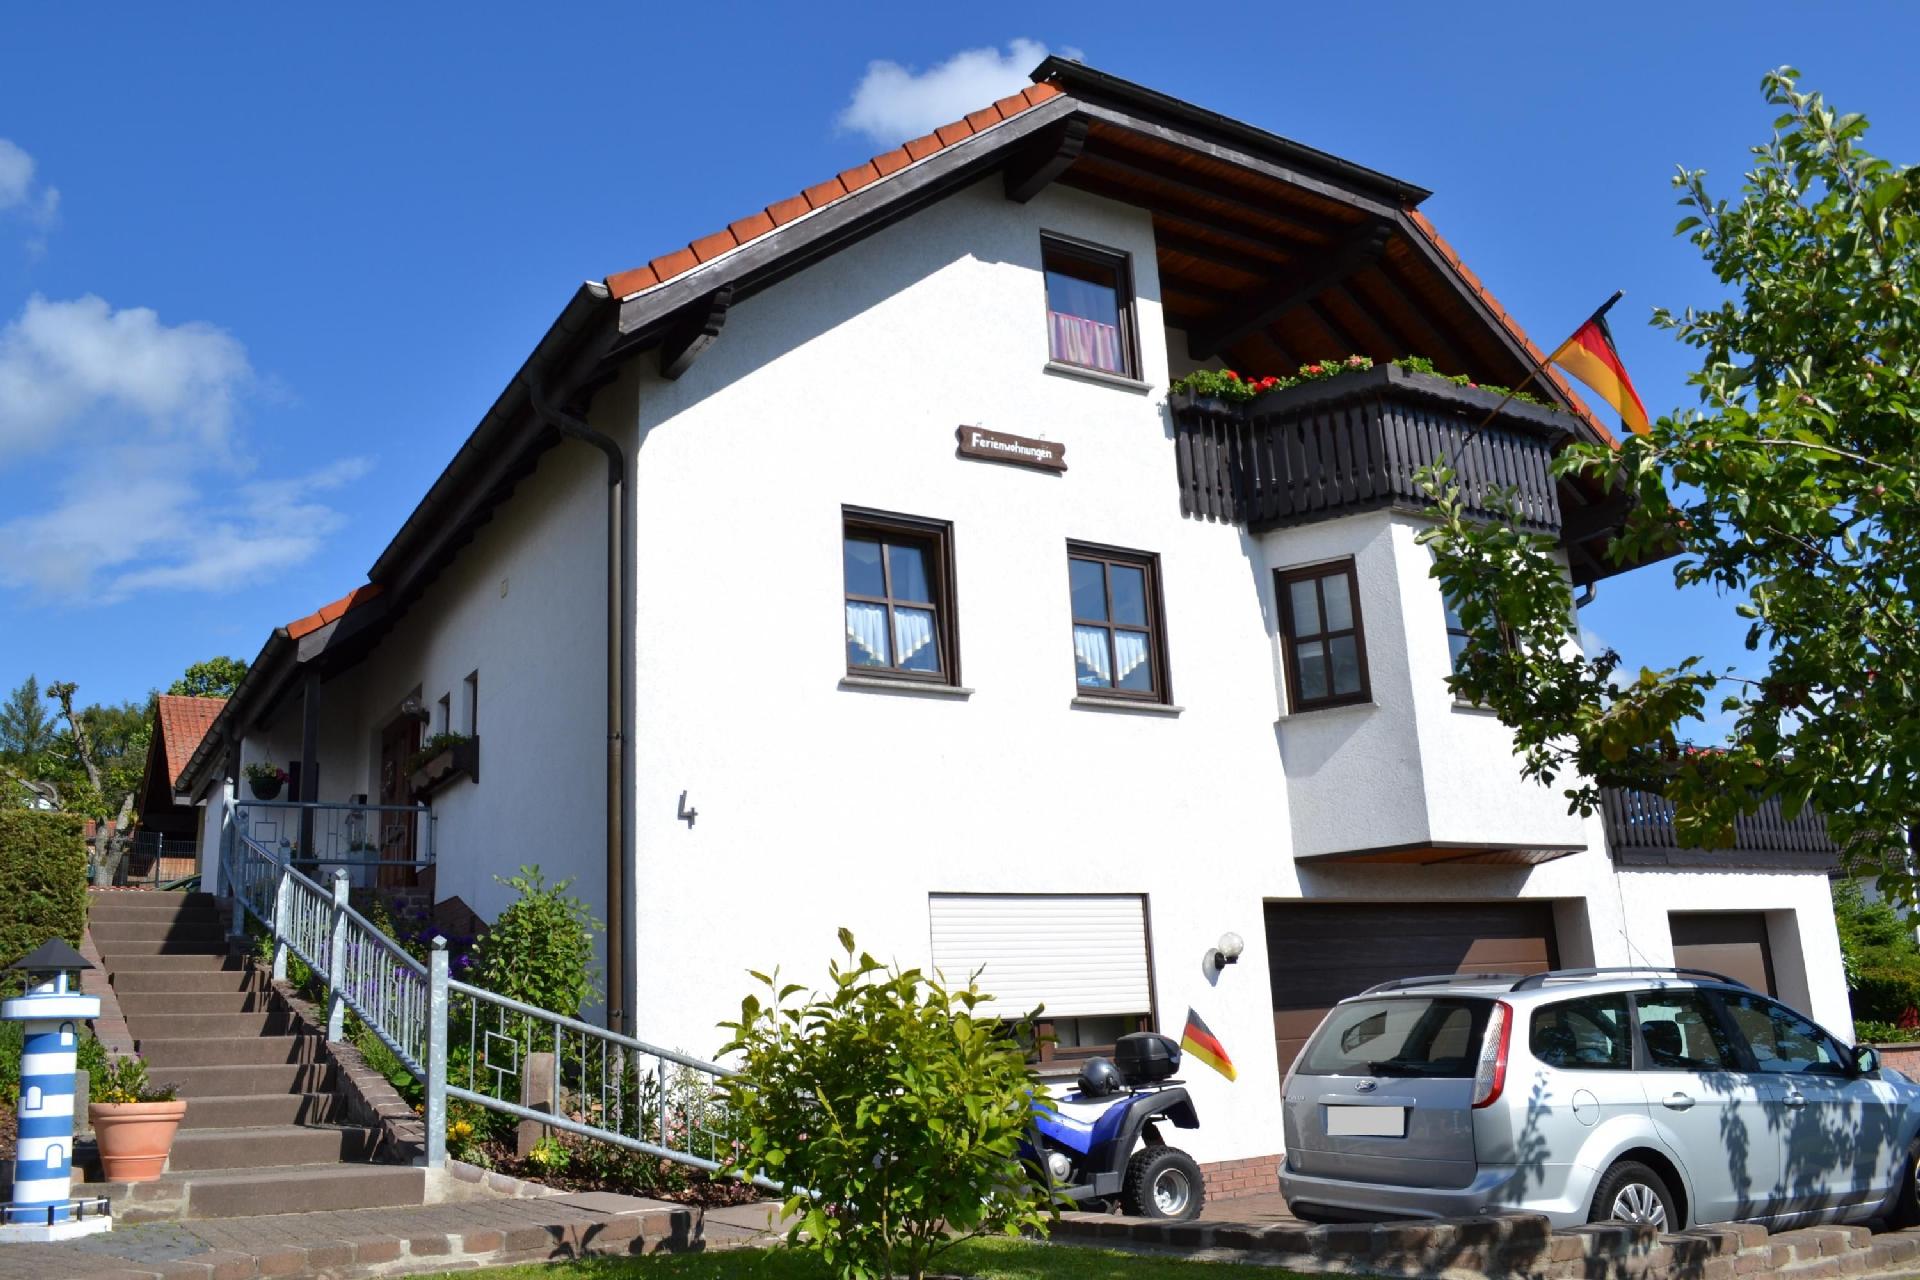 Appartement in Hilders mit Eigenem Balkon Ferienhaus in Europa